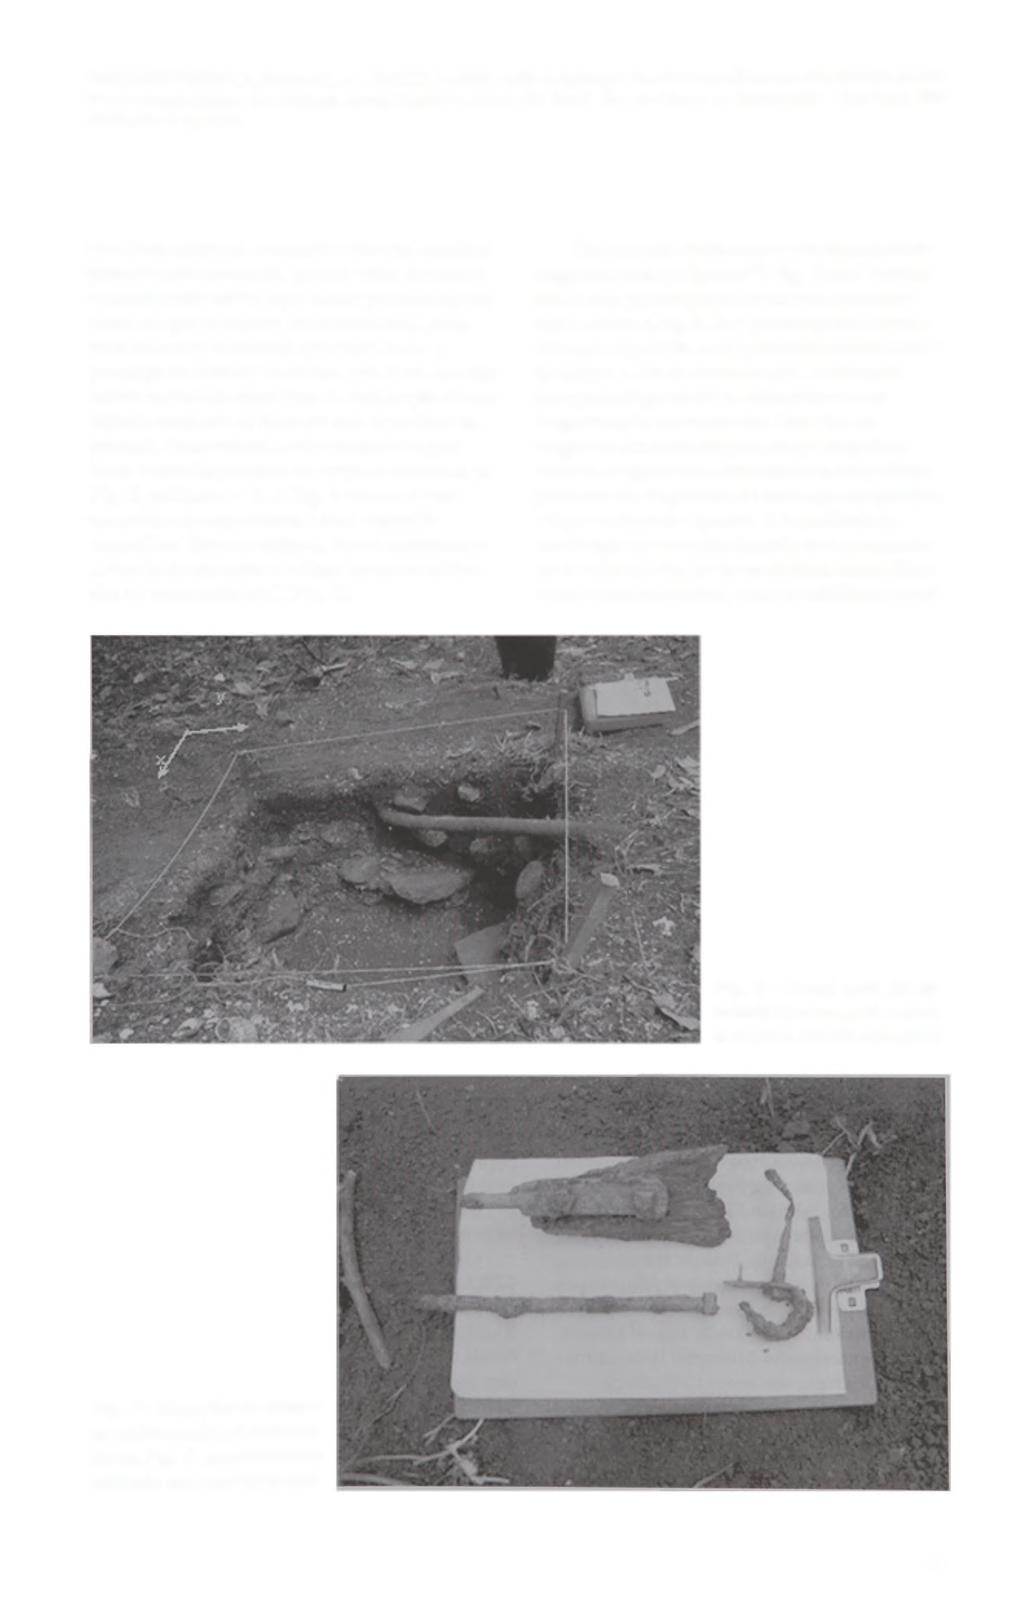 BRITO-SCHIMMEL, P., PORSANI, J.L., FIGUTI, L DeBLASIS, P. Aplicação de métodos geofísicos em Arqueologia: primeiros Paulo, 72:43-54,2002.